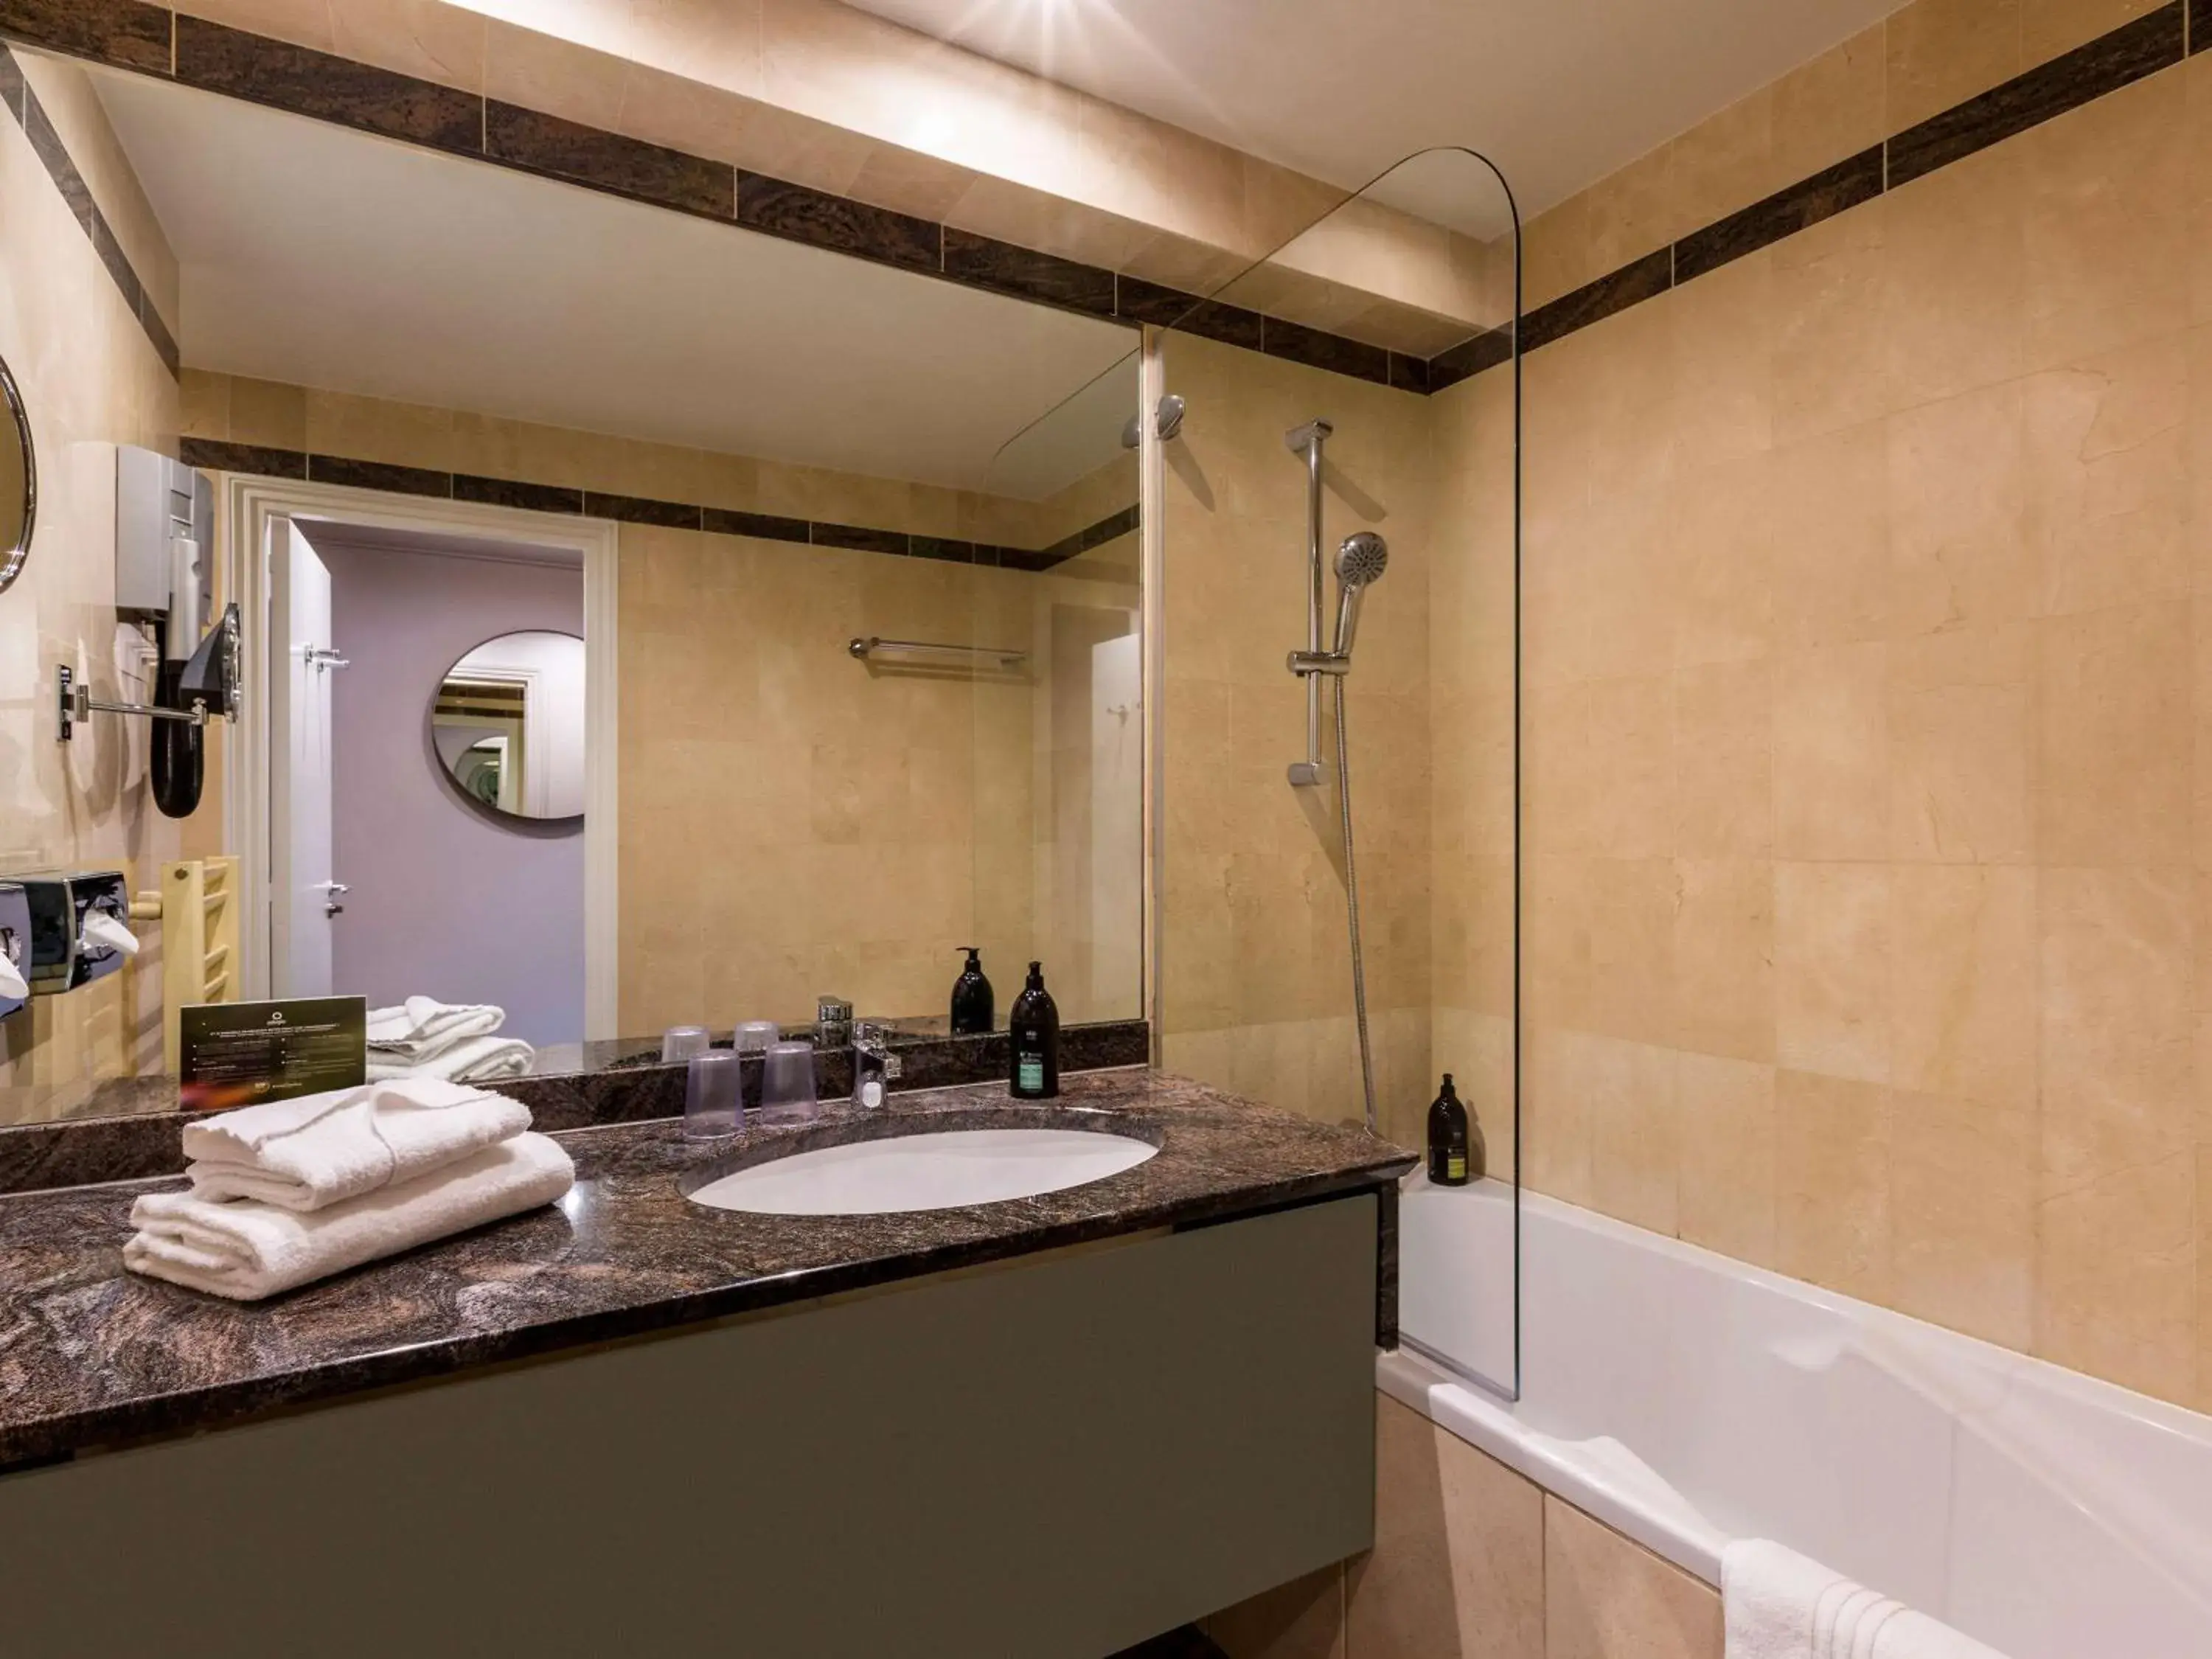 Photo of the whole room, Bathroom in Aparthotel Adagio Paris Haussmann